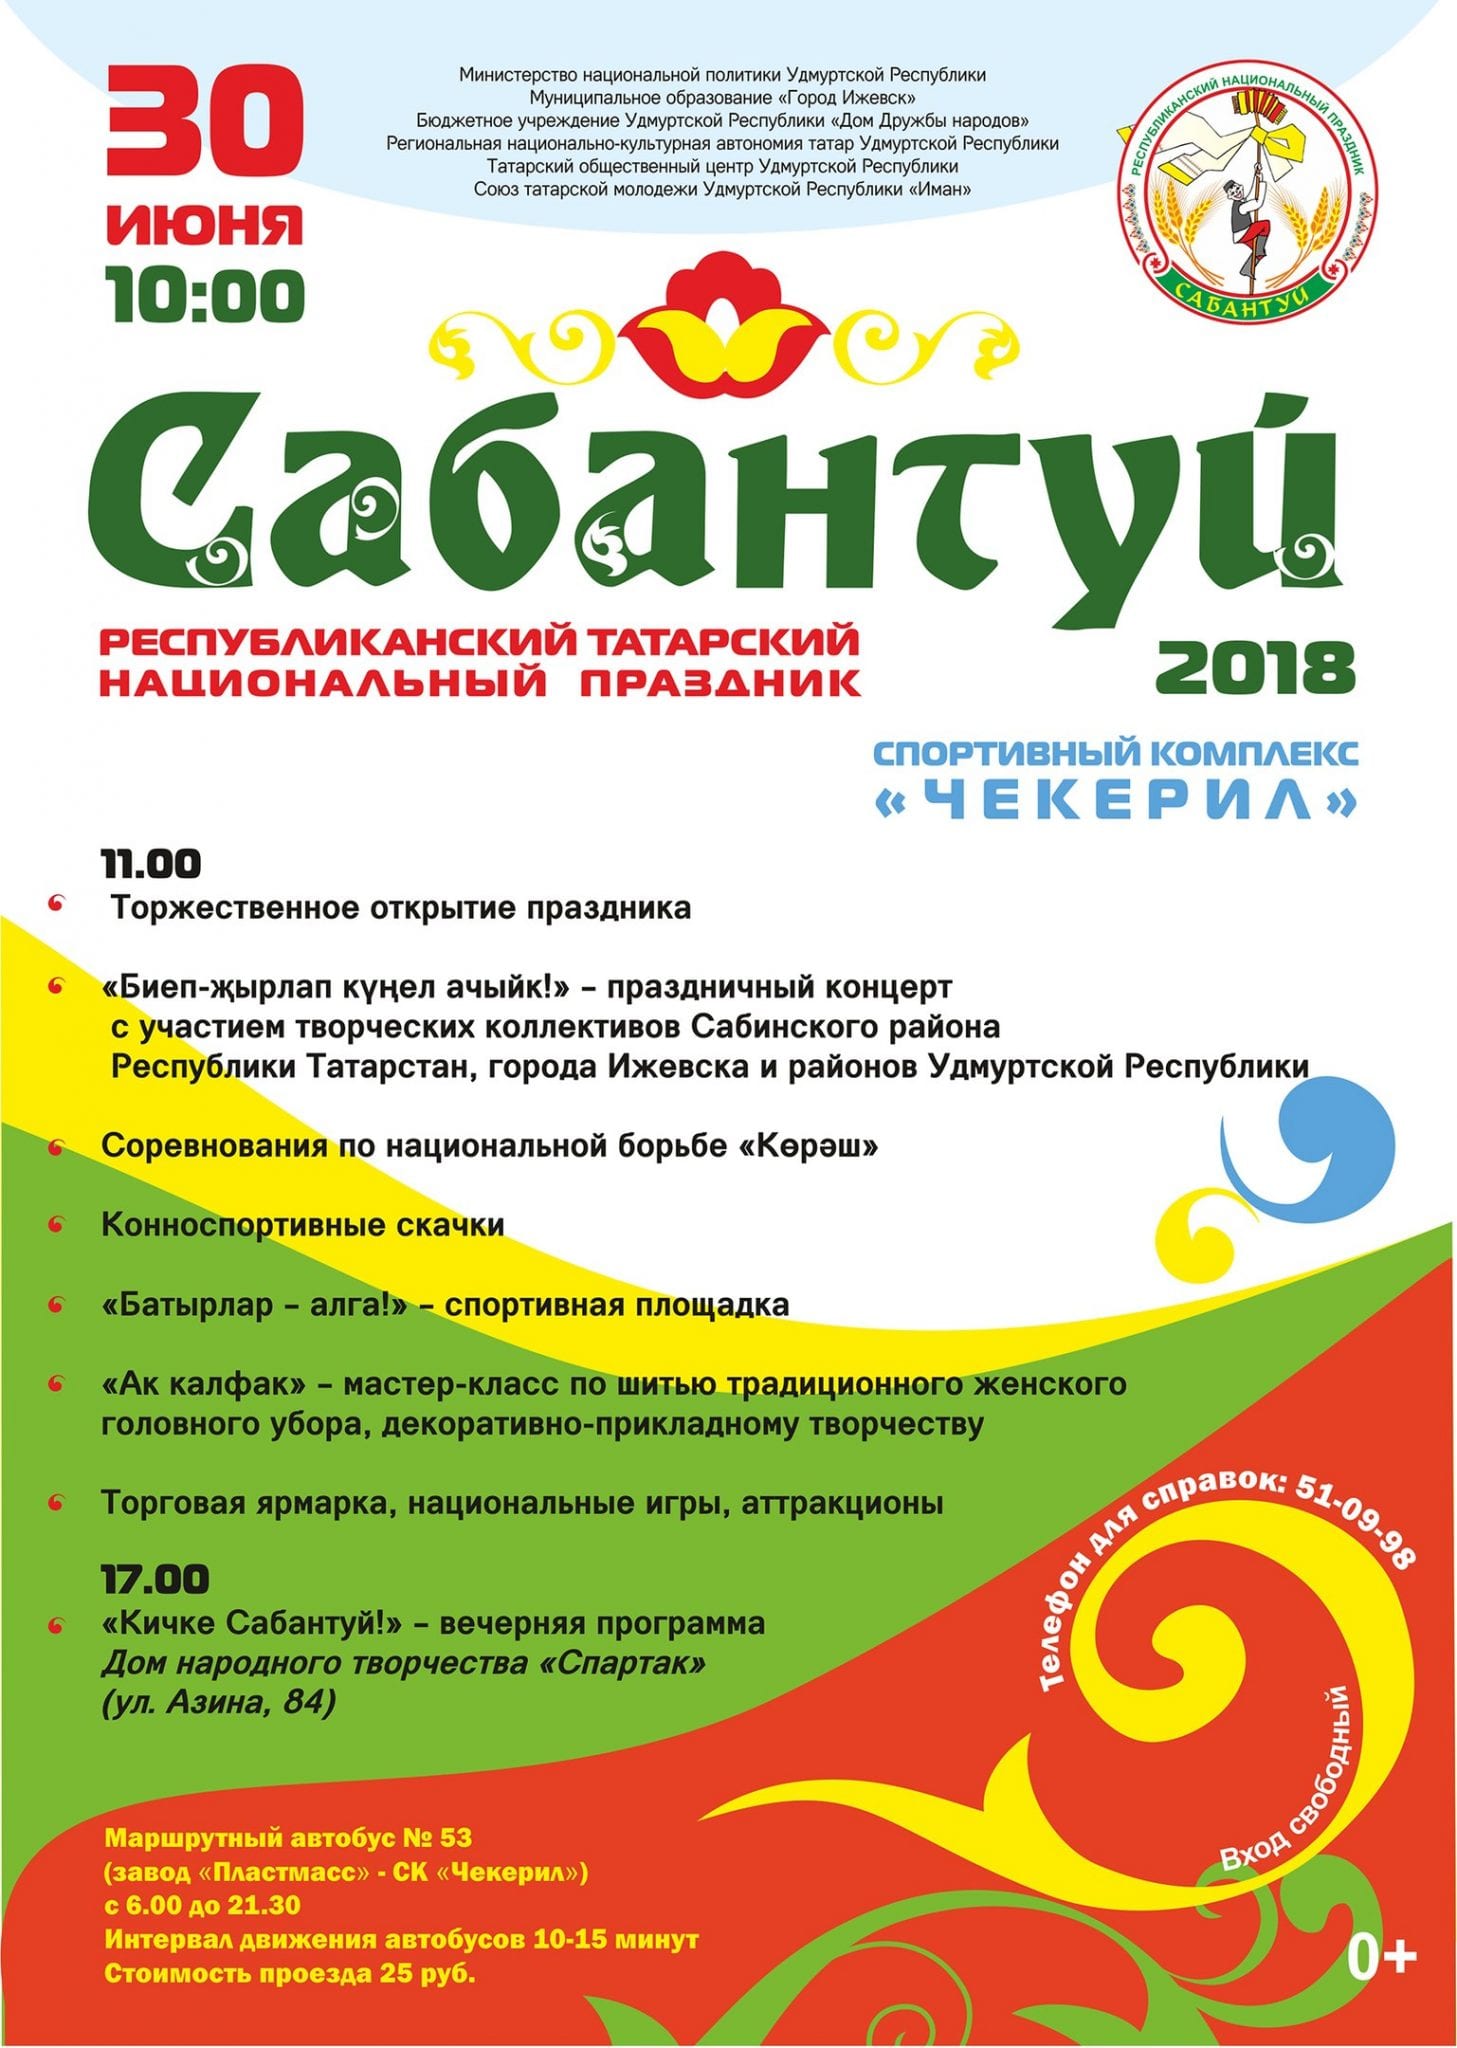 Татарский национальный праздник «сабантуй» 24